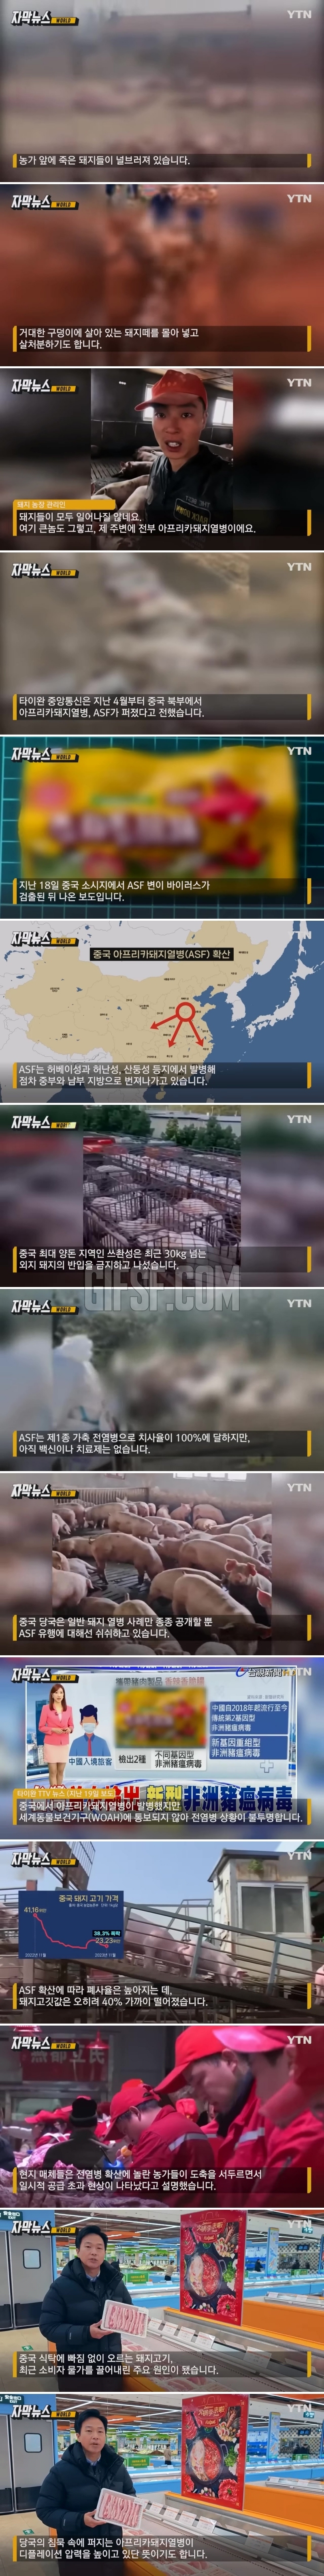 널브러진 죽은 돼지들.중국이 은폐하고 있는 비밀.jpg